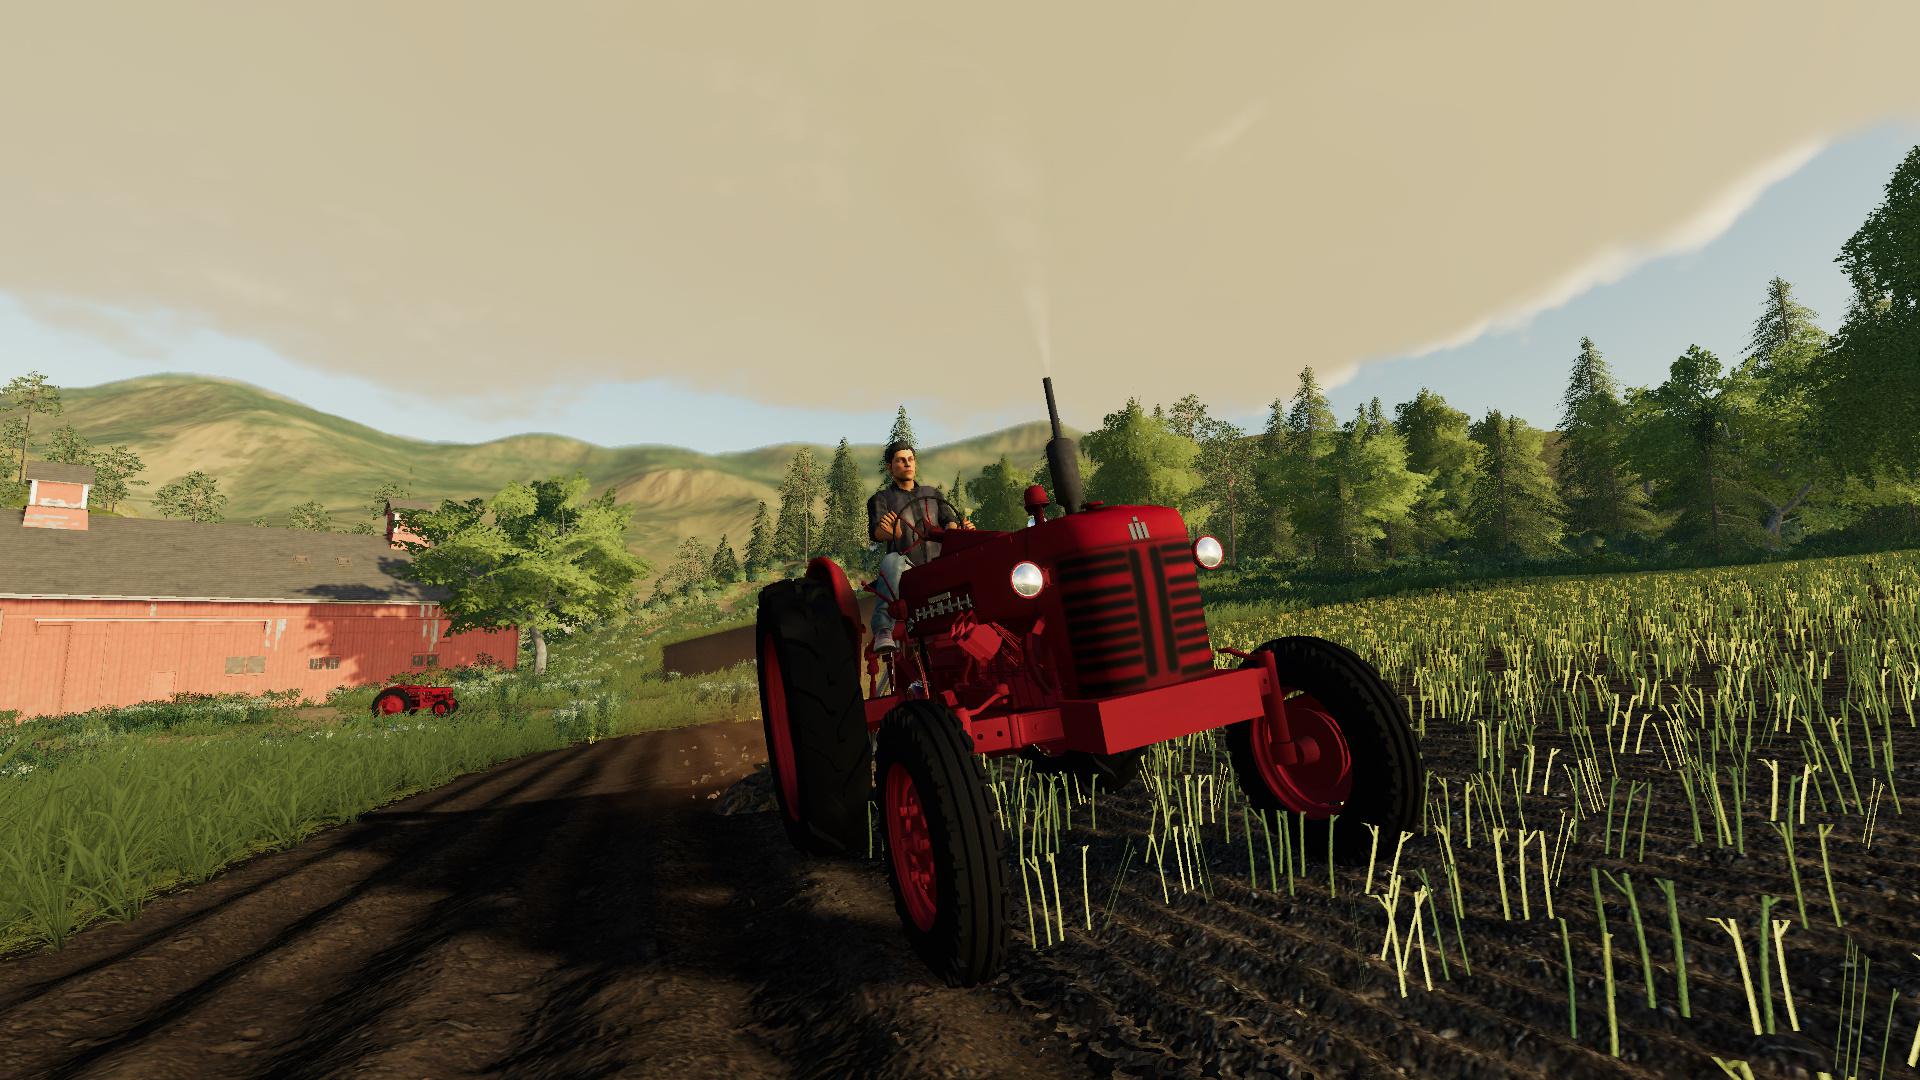 farming simulator 19 pc digital download